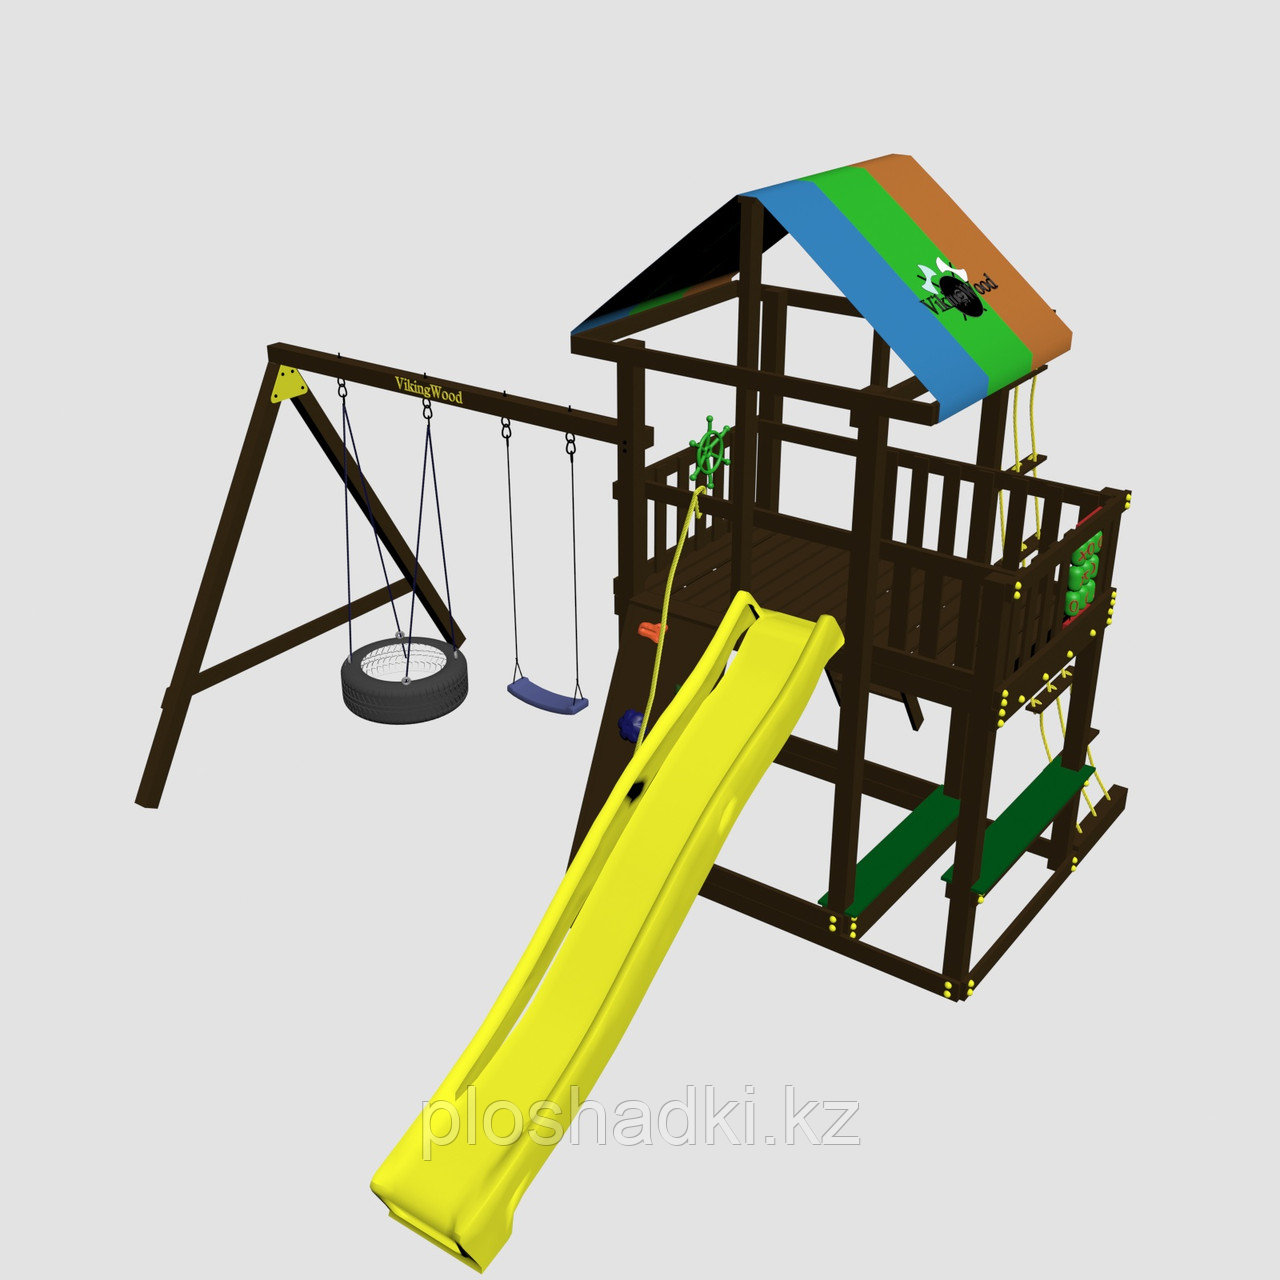 Детская площадка "Сиело с шиной", цветная крыша, канатная сетка, лестница из дерева, горка, фото 1